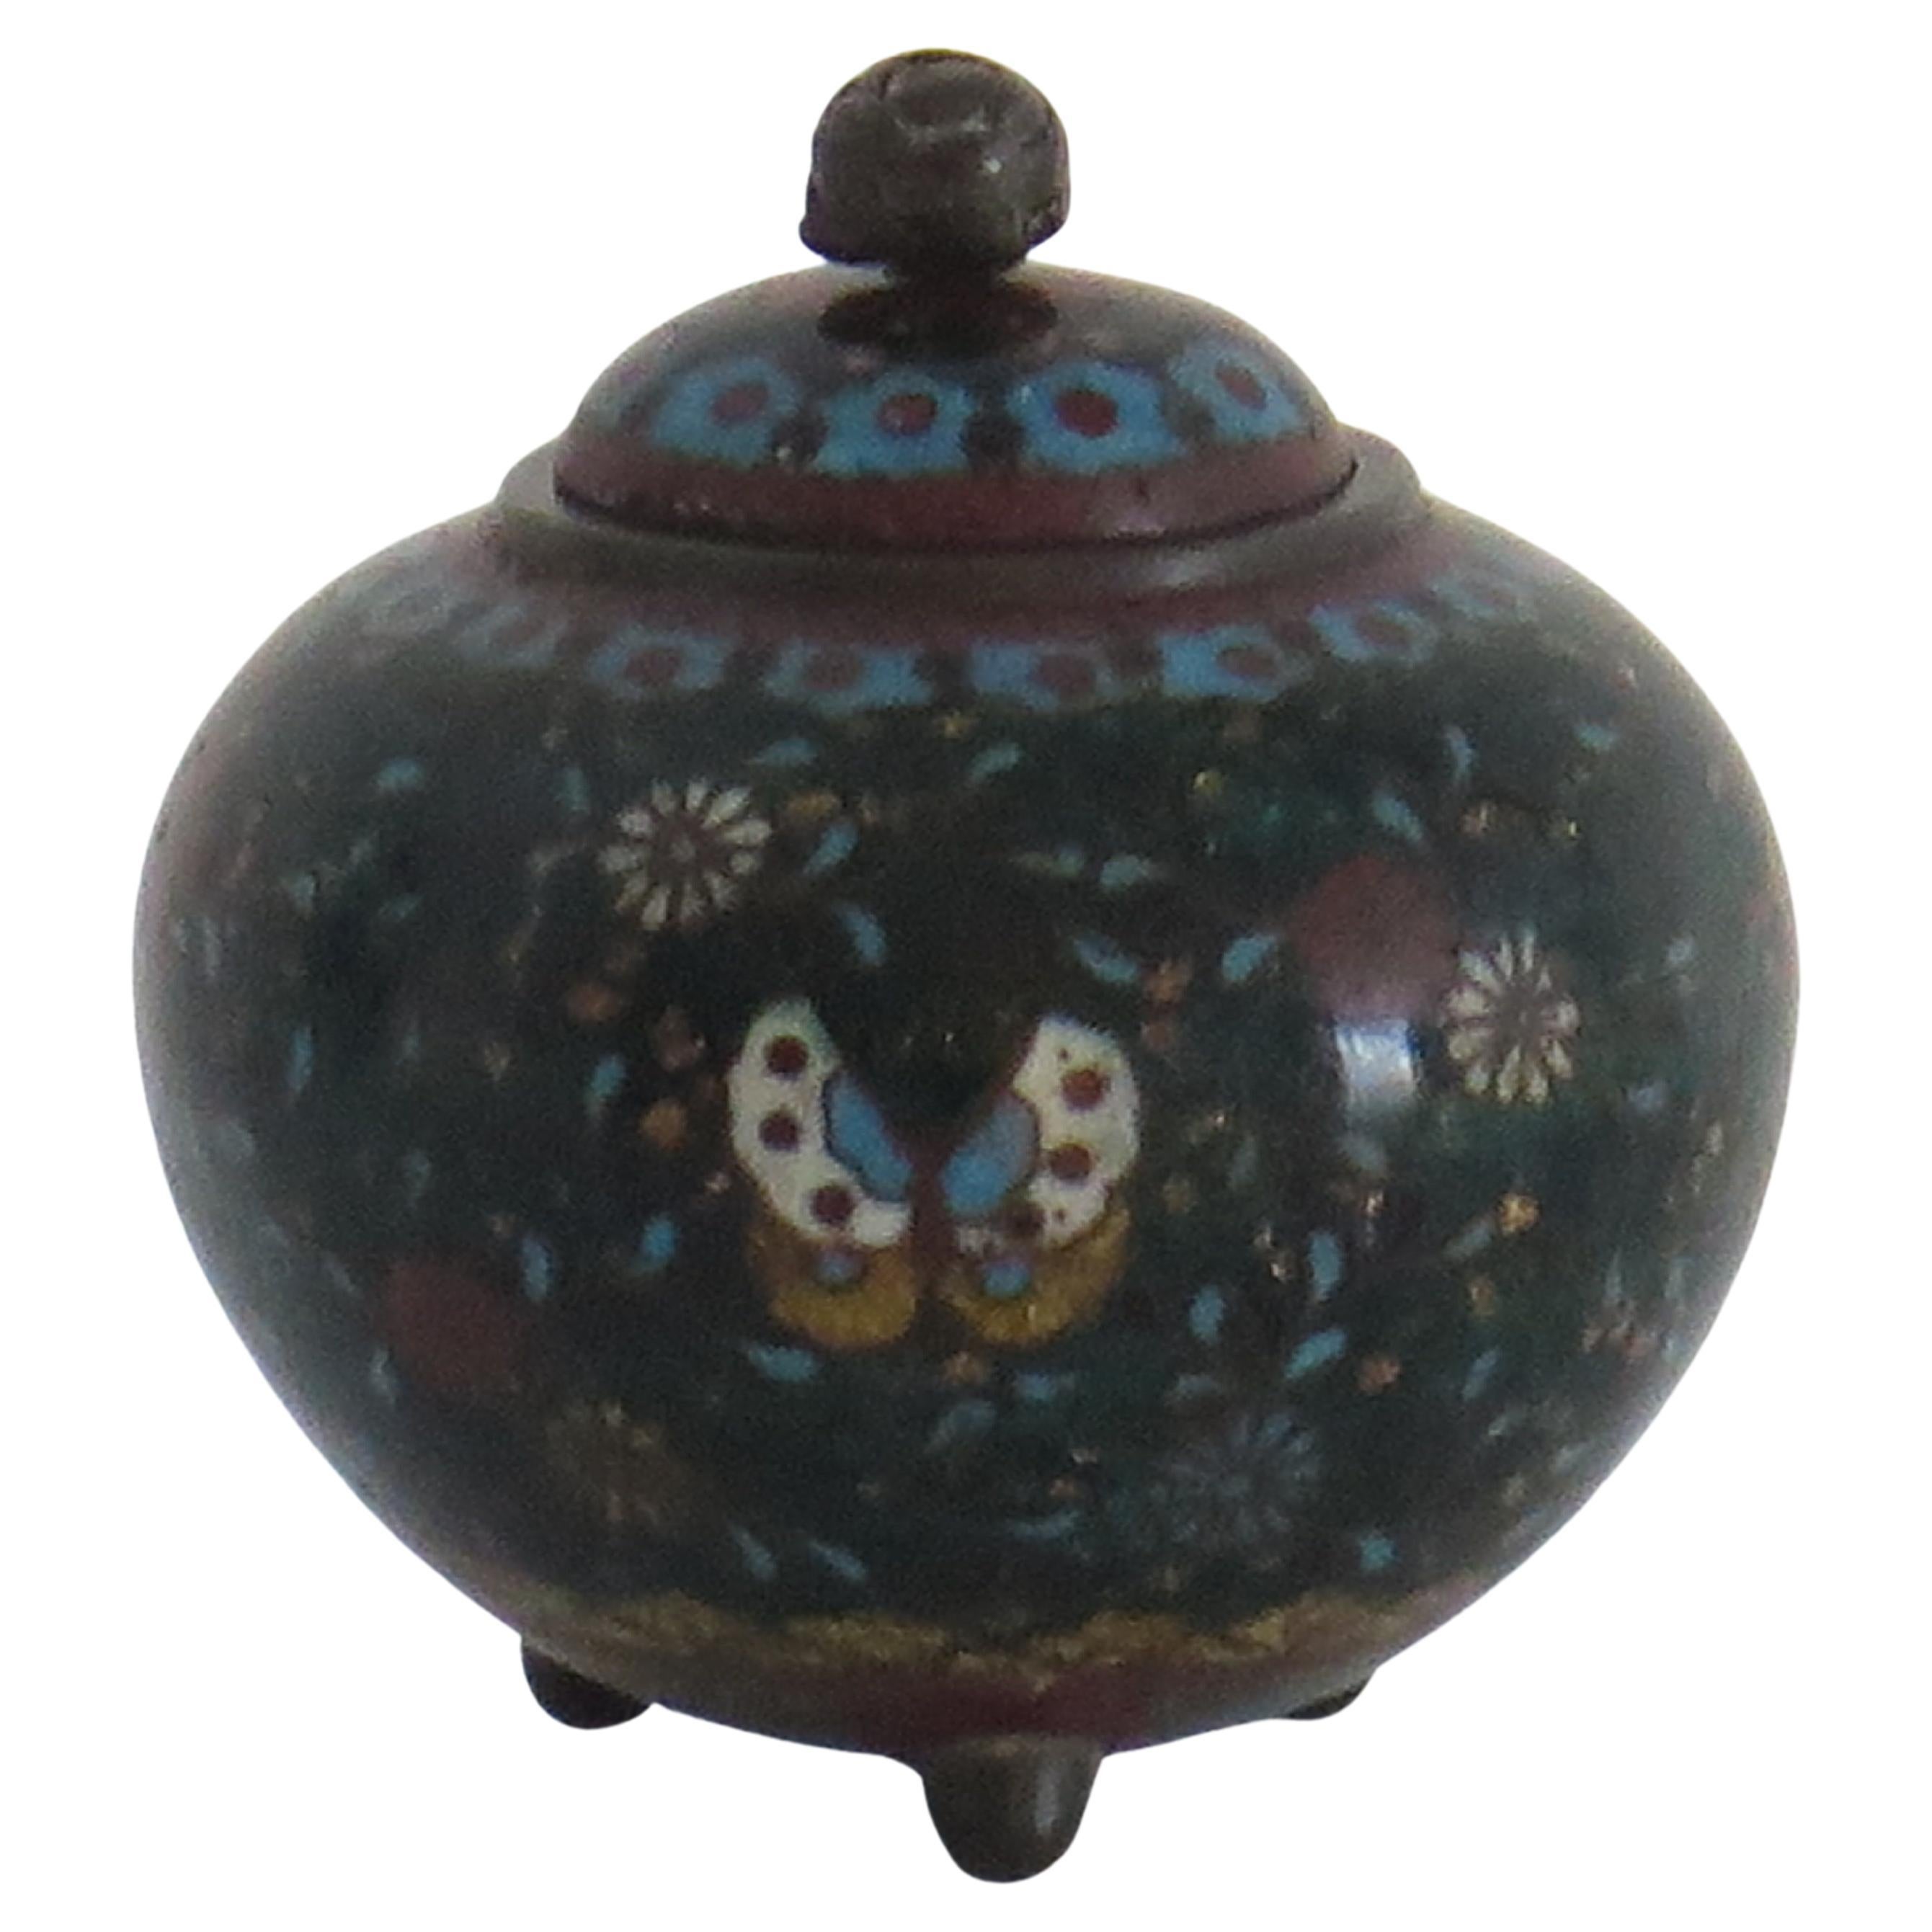 Petite jarre à couvercle cloisonné japonaise du 19e siècle, début de la période Meiji 